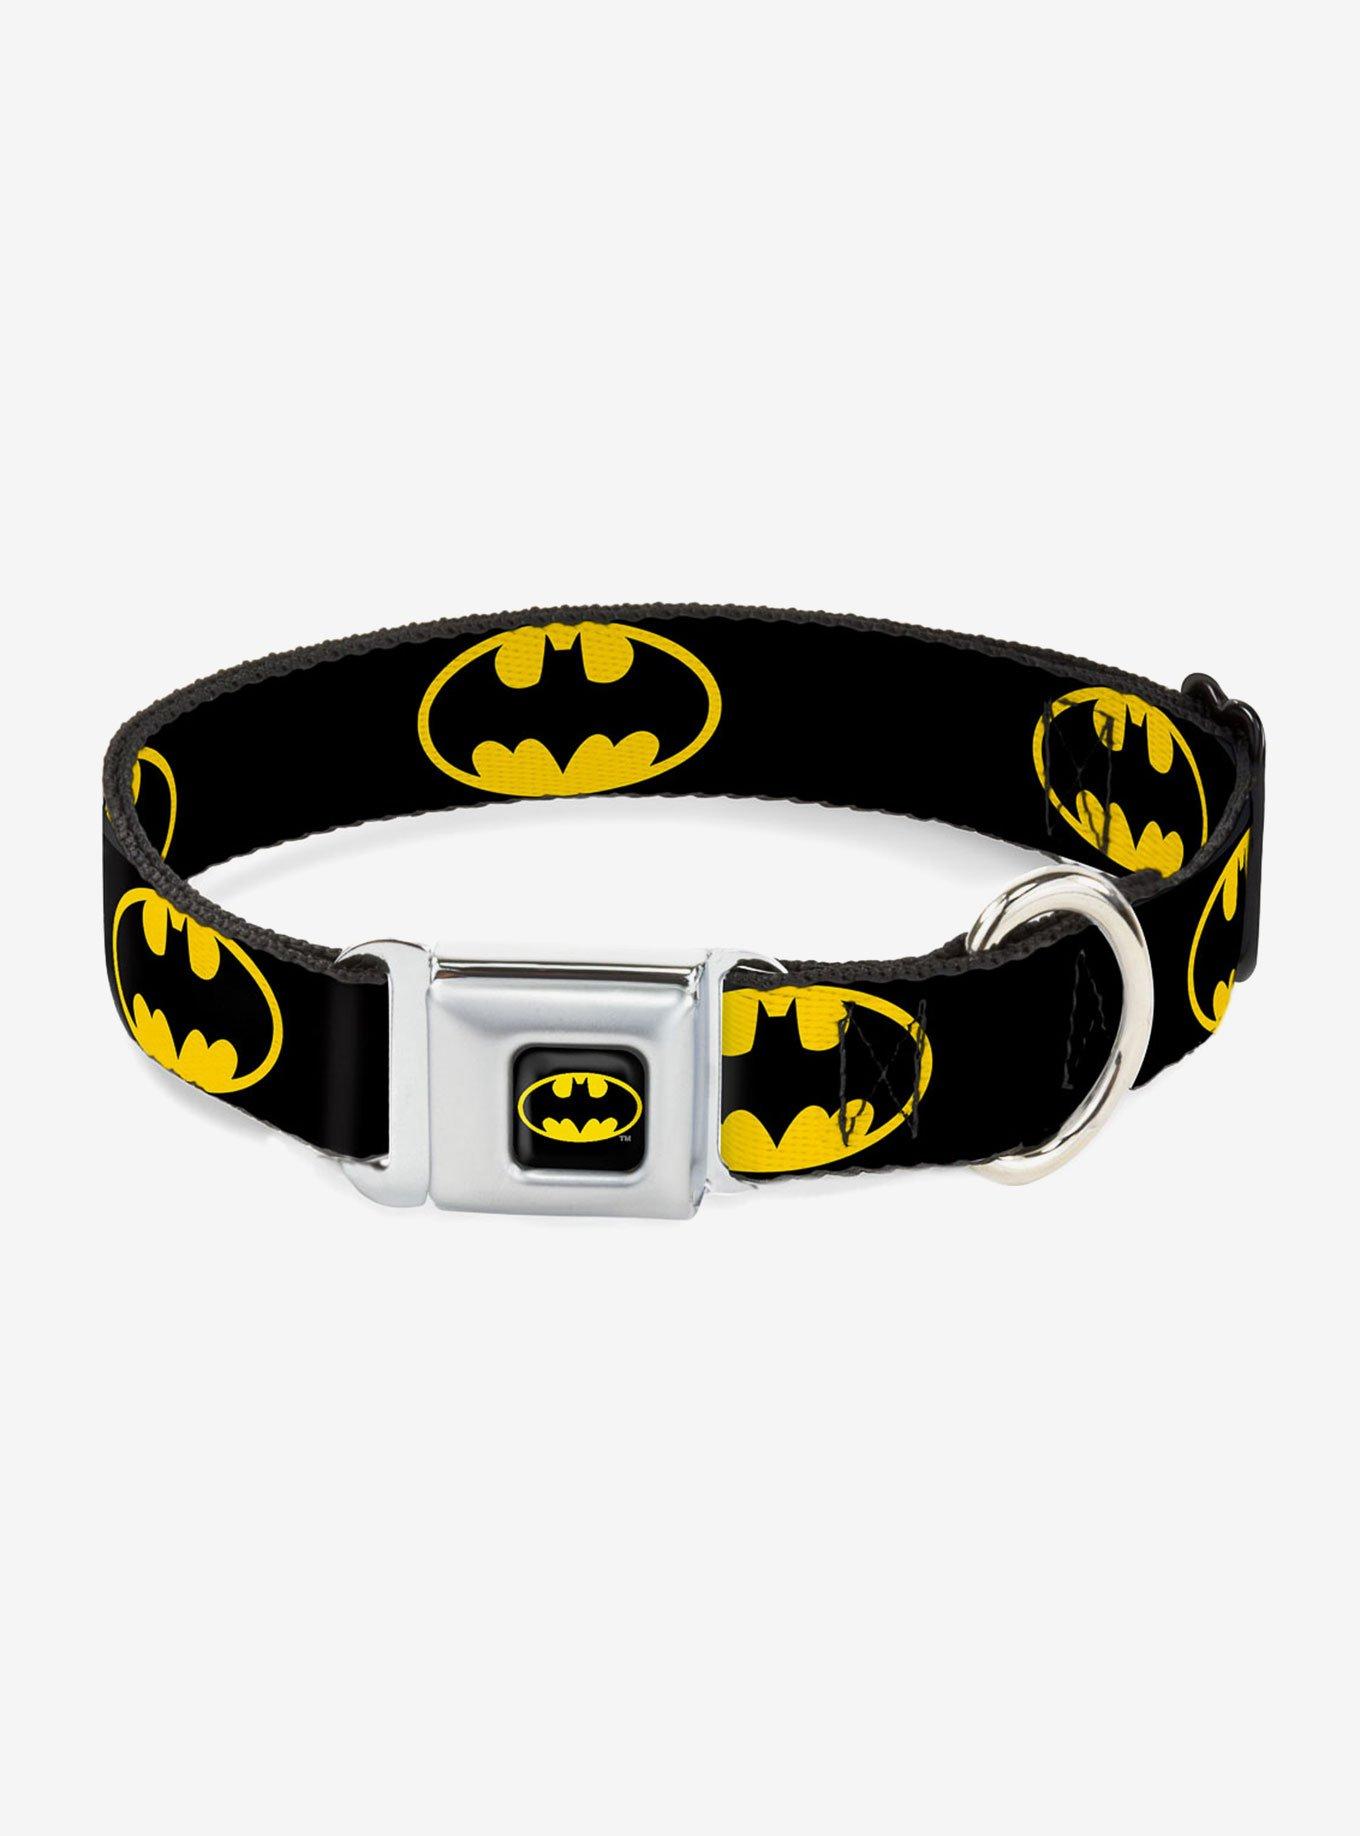 DC Comics Justice League Batman Shield Black Yellow Seatbelt Buckle Pet Collar, BLACK, hi-res